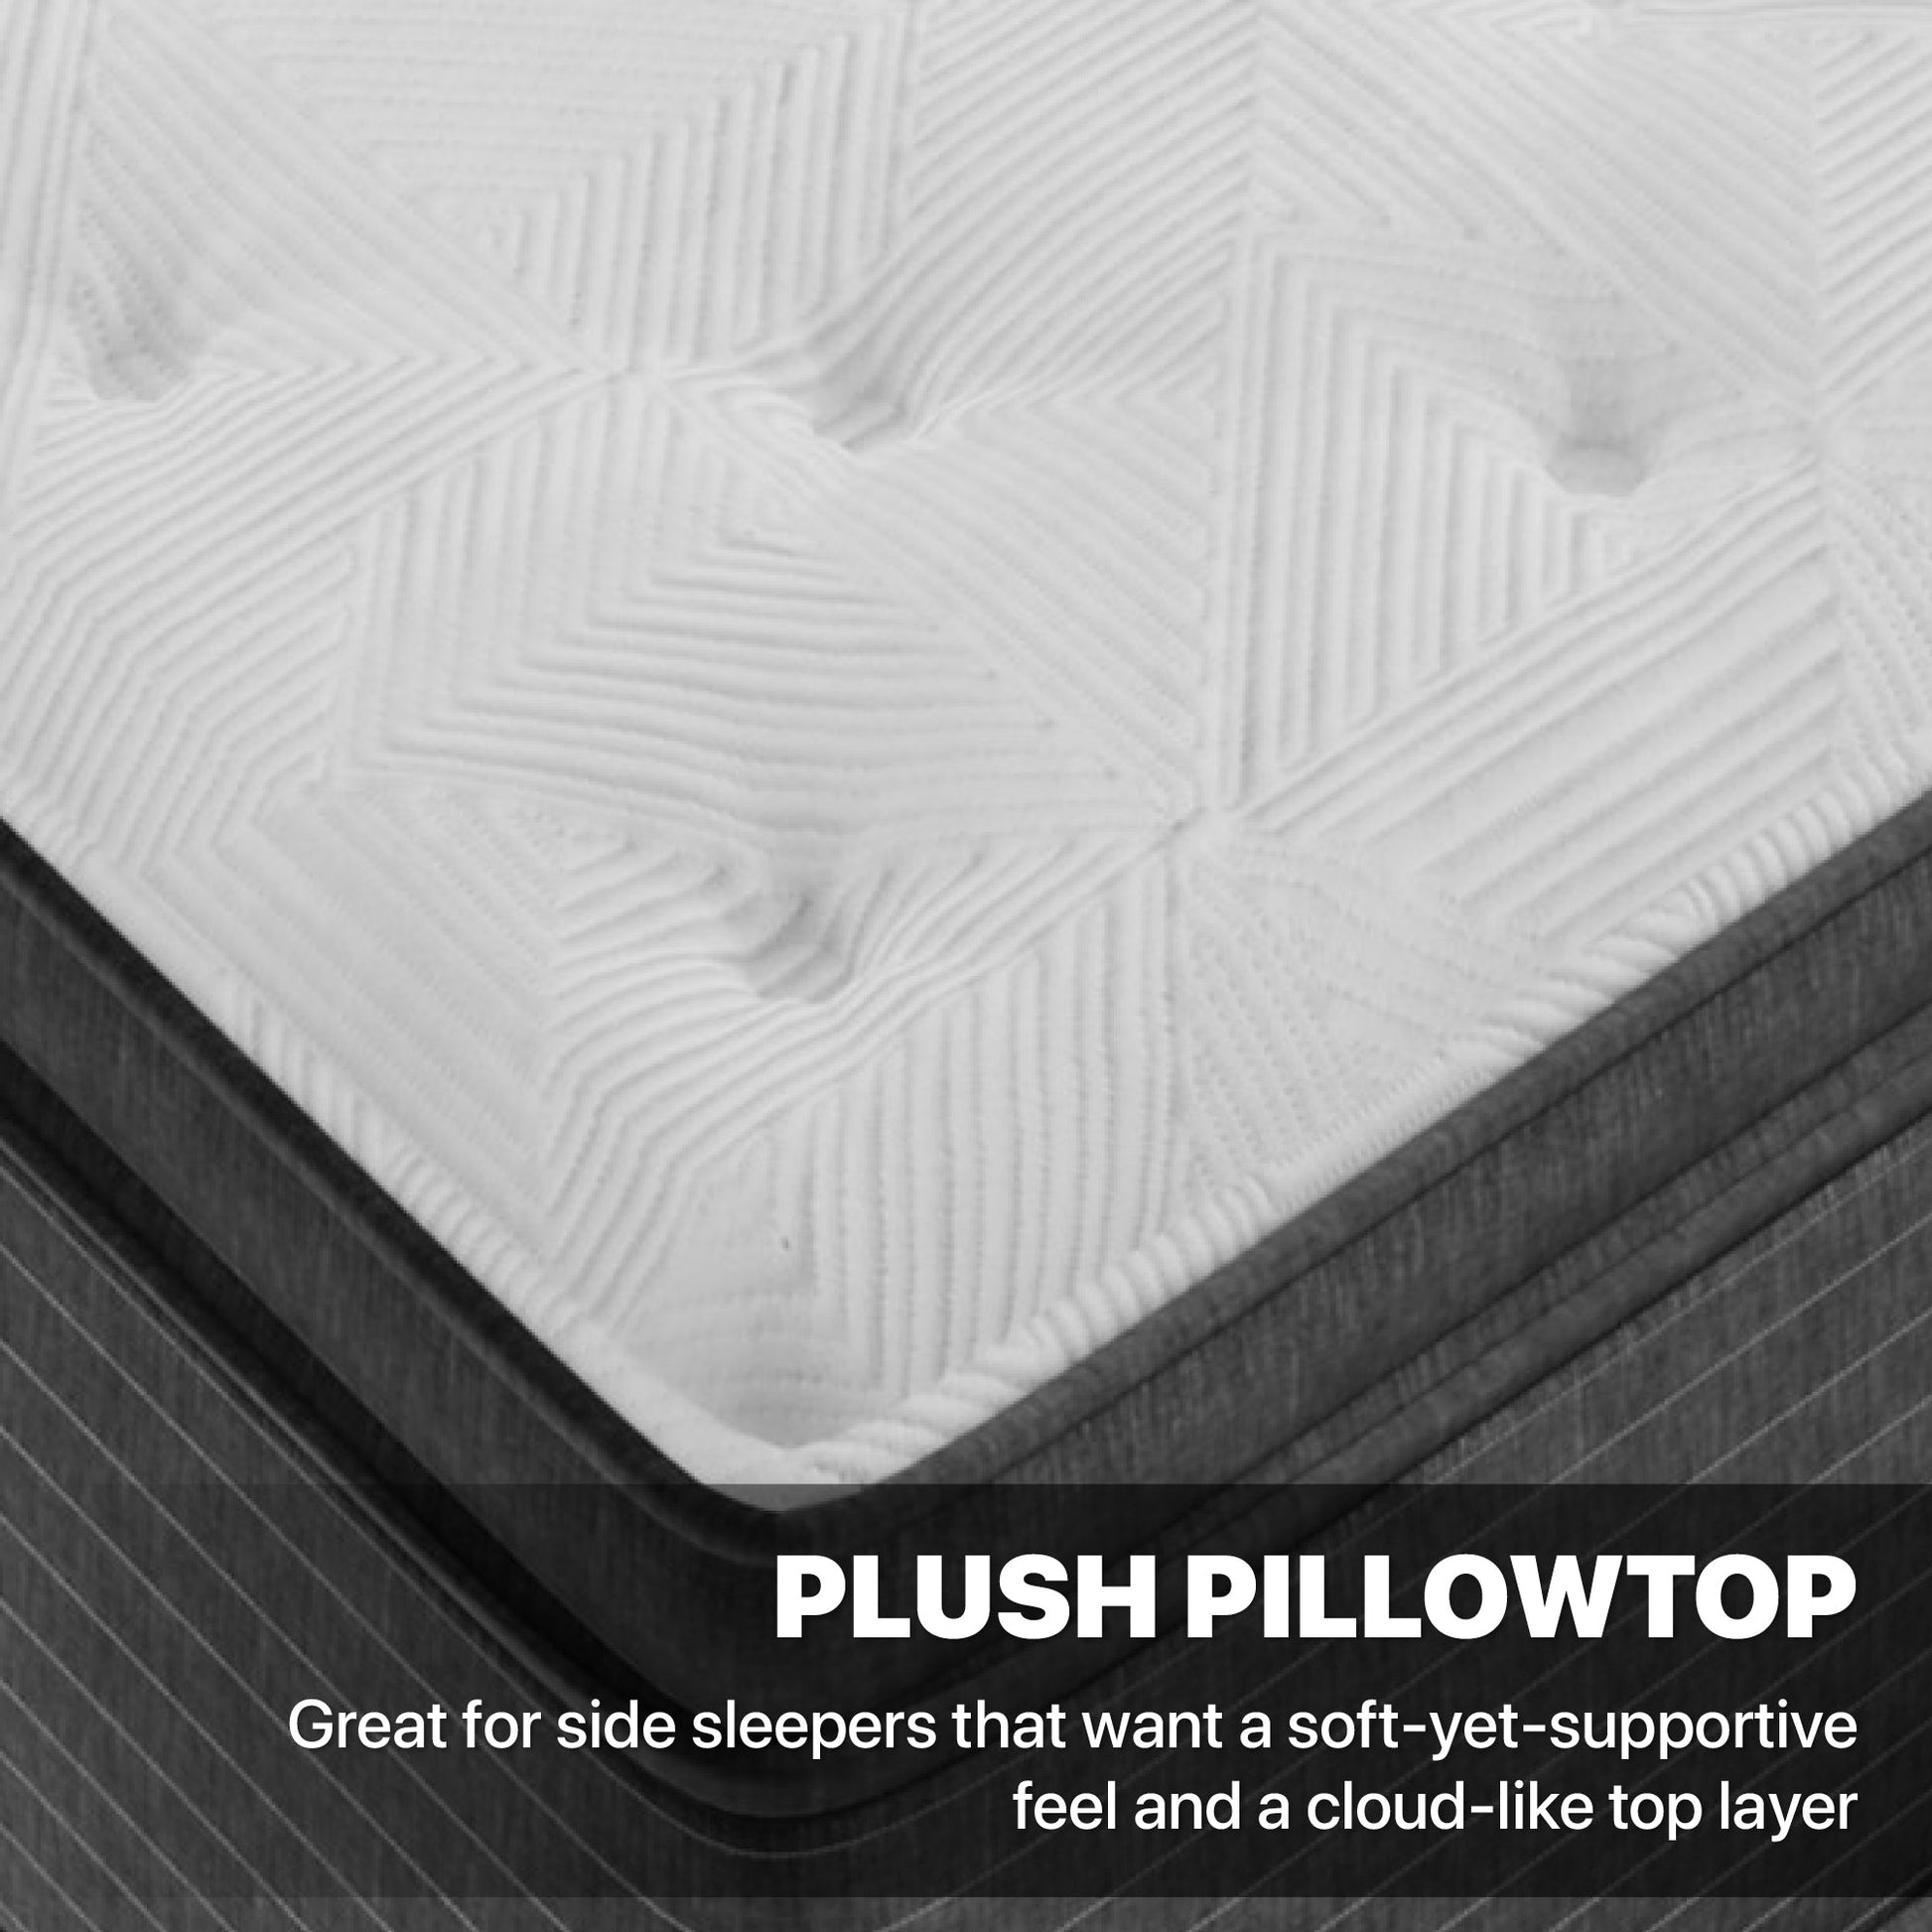 Beautyrest Elements Chesapeake Plush Pillow Top Mattress Plush Pillowtop Feel